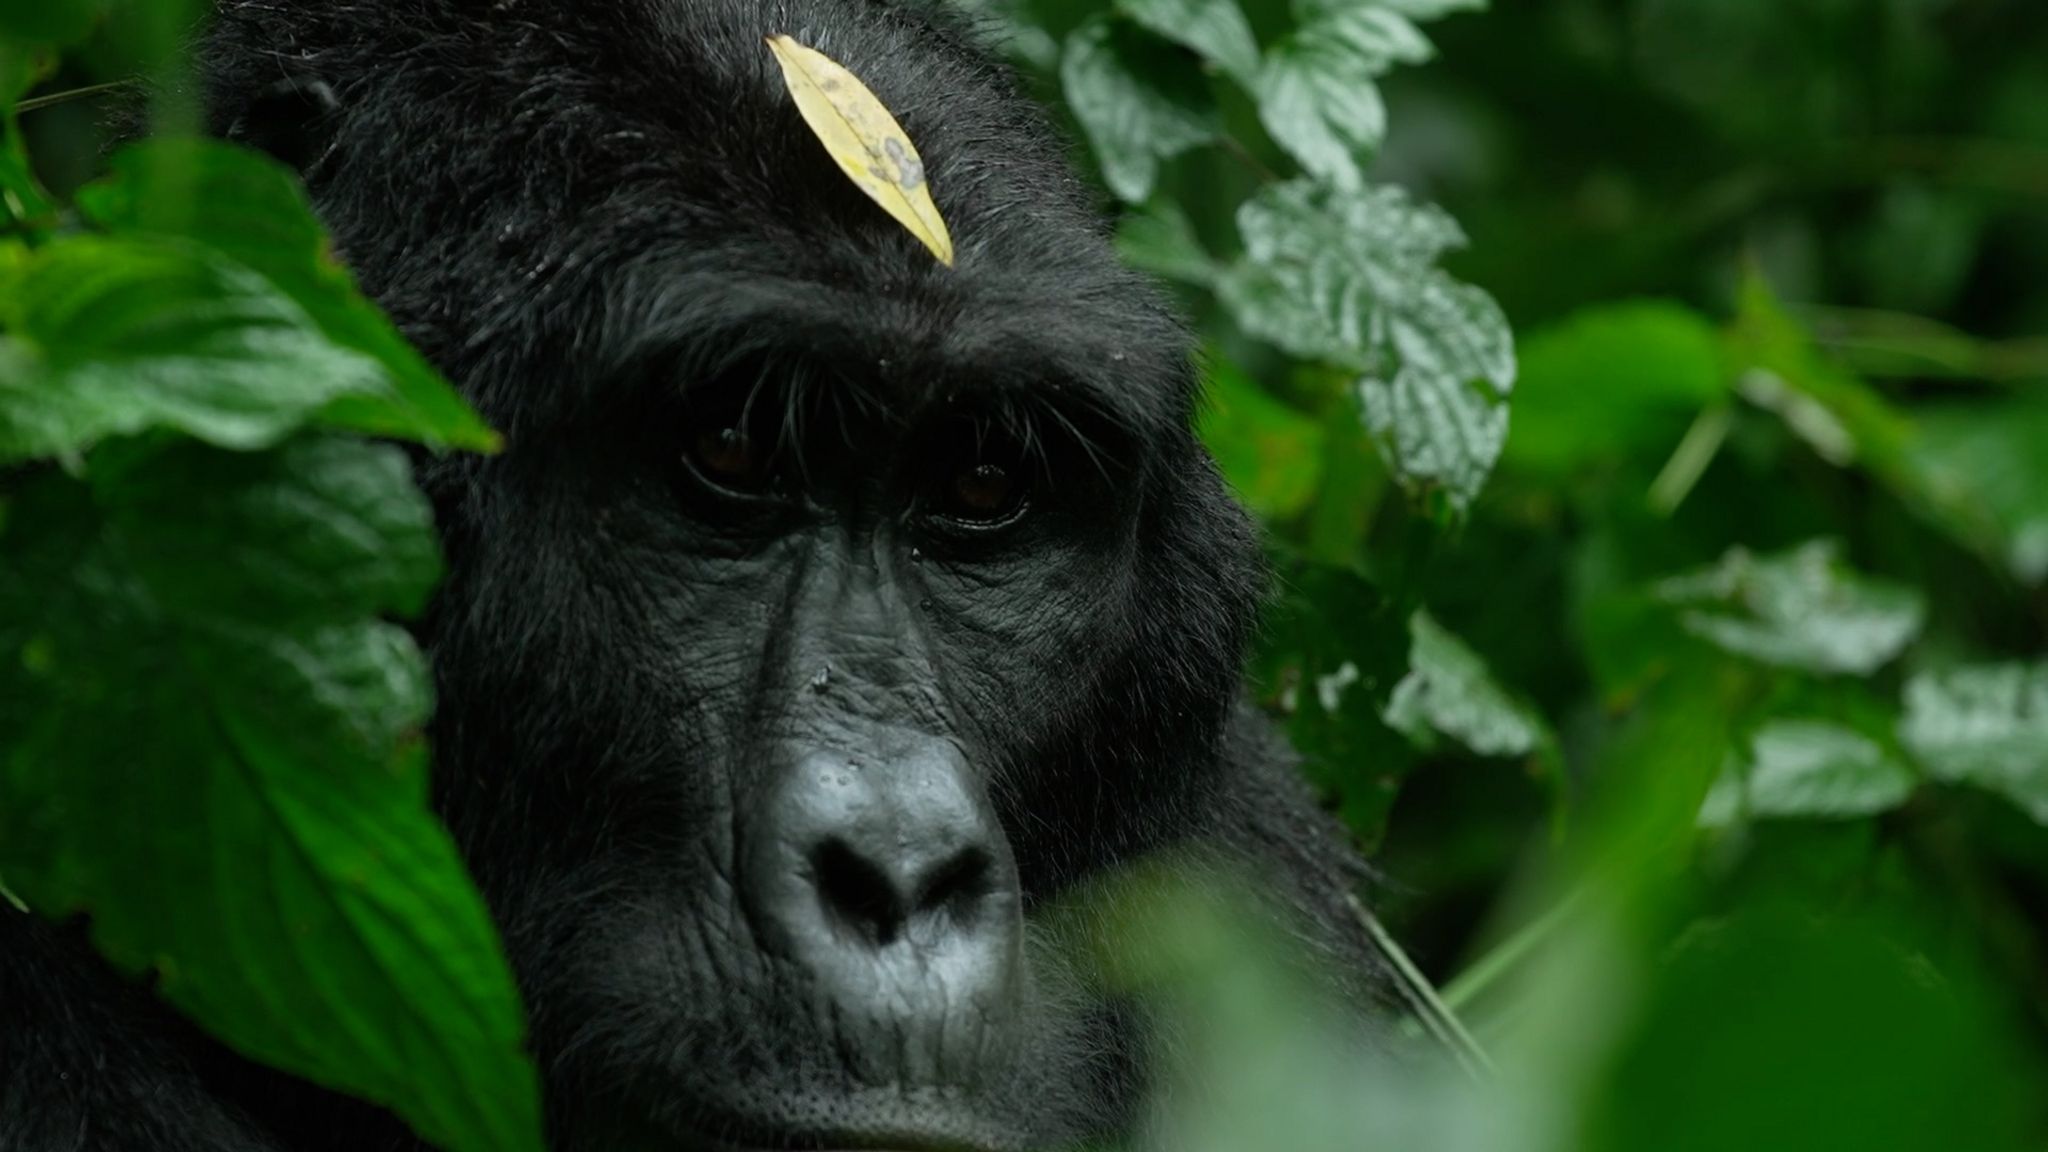 A mountain gorilla in Gladys Kalema-Zikusoka's care